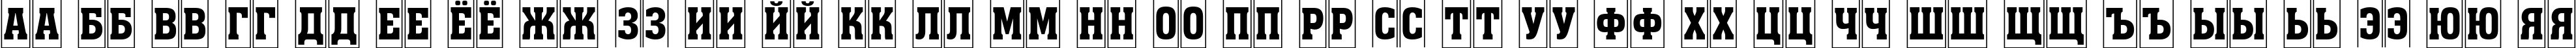 Пример написания русского алфавита шрифтом a_AssuanTitulCmFr